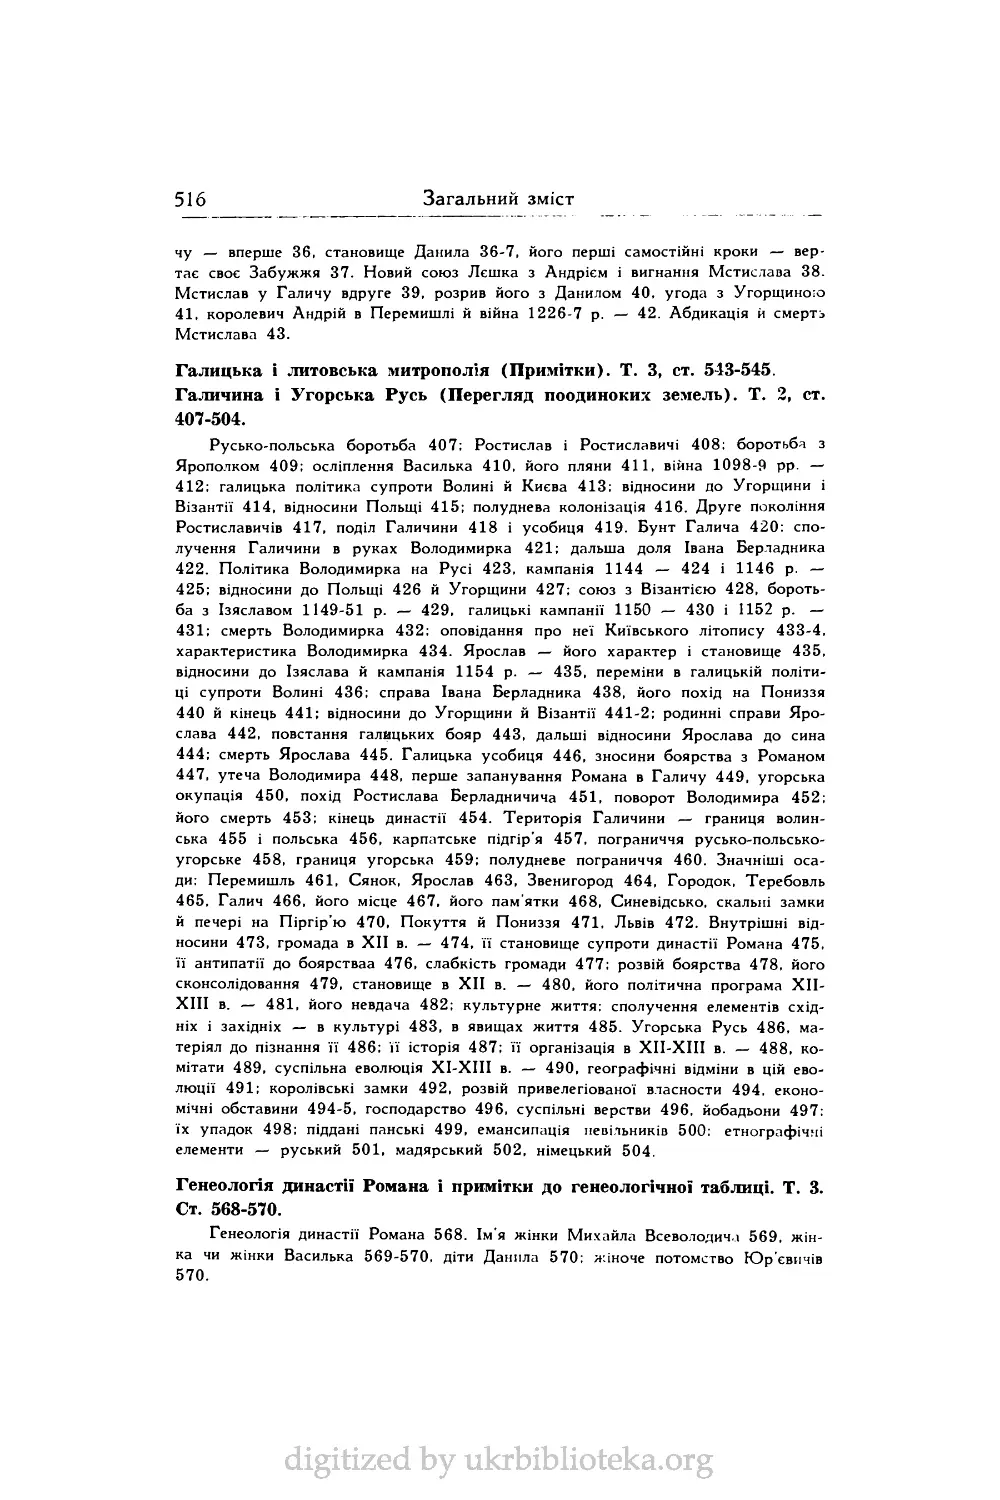 Генеологія династії Романа і примітки до генеологічної таблиці. Т. 3. Ст. 568-570.